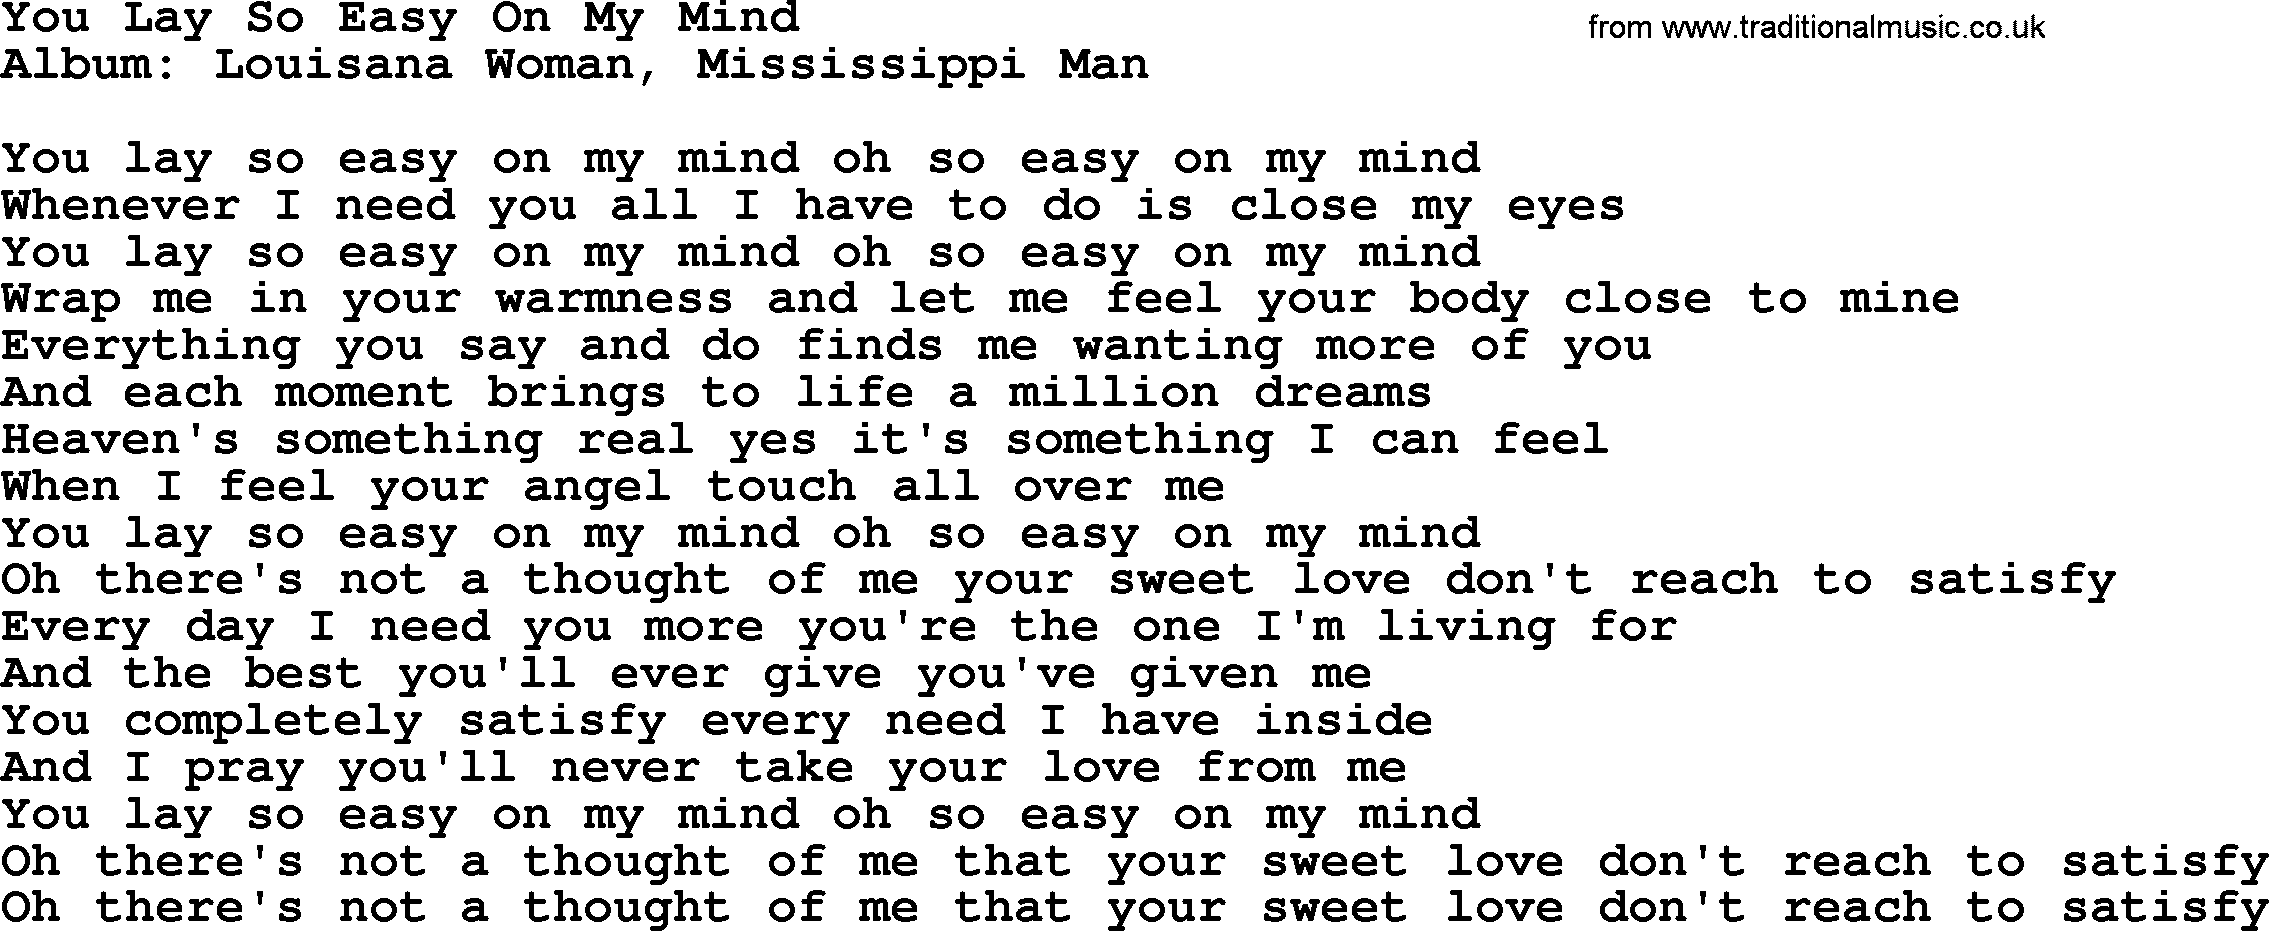 Loretta Lynn song: You Lay So Easy On My Mind lyrics